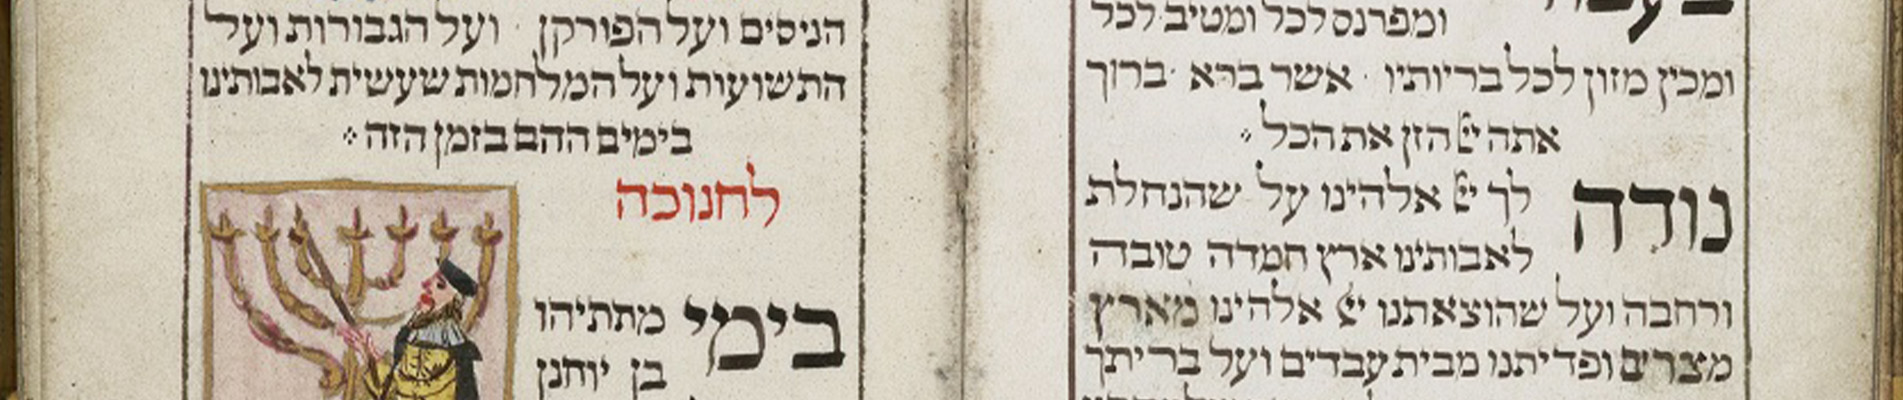 פרויקט חדשני ינתח לראשונה, באמצעות בינה מלאכותית, עשרות אלפי כתבי יד עבריים 